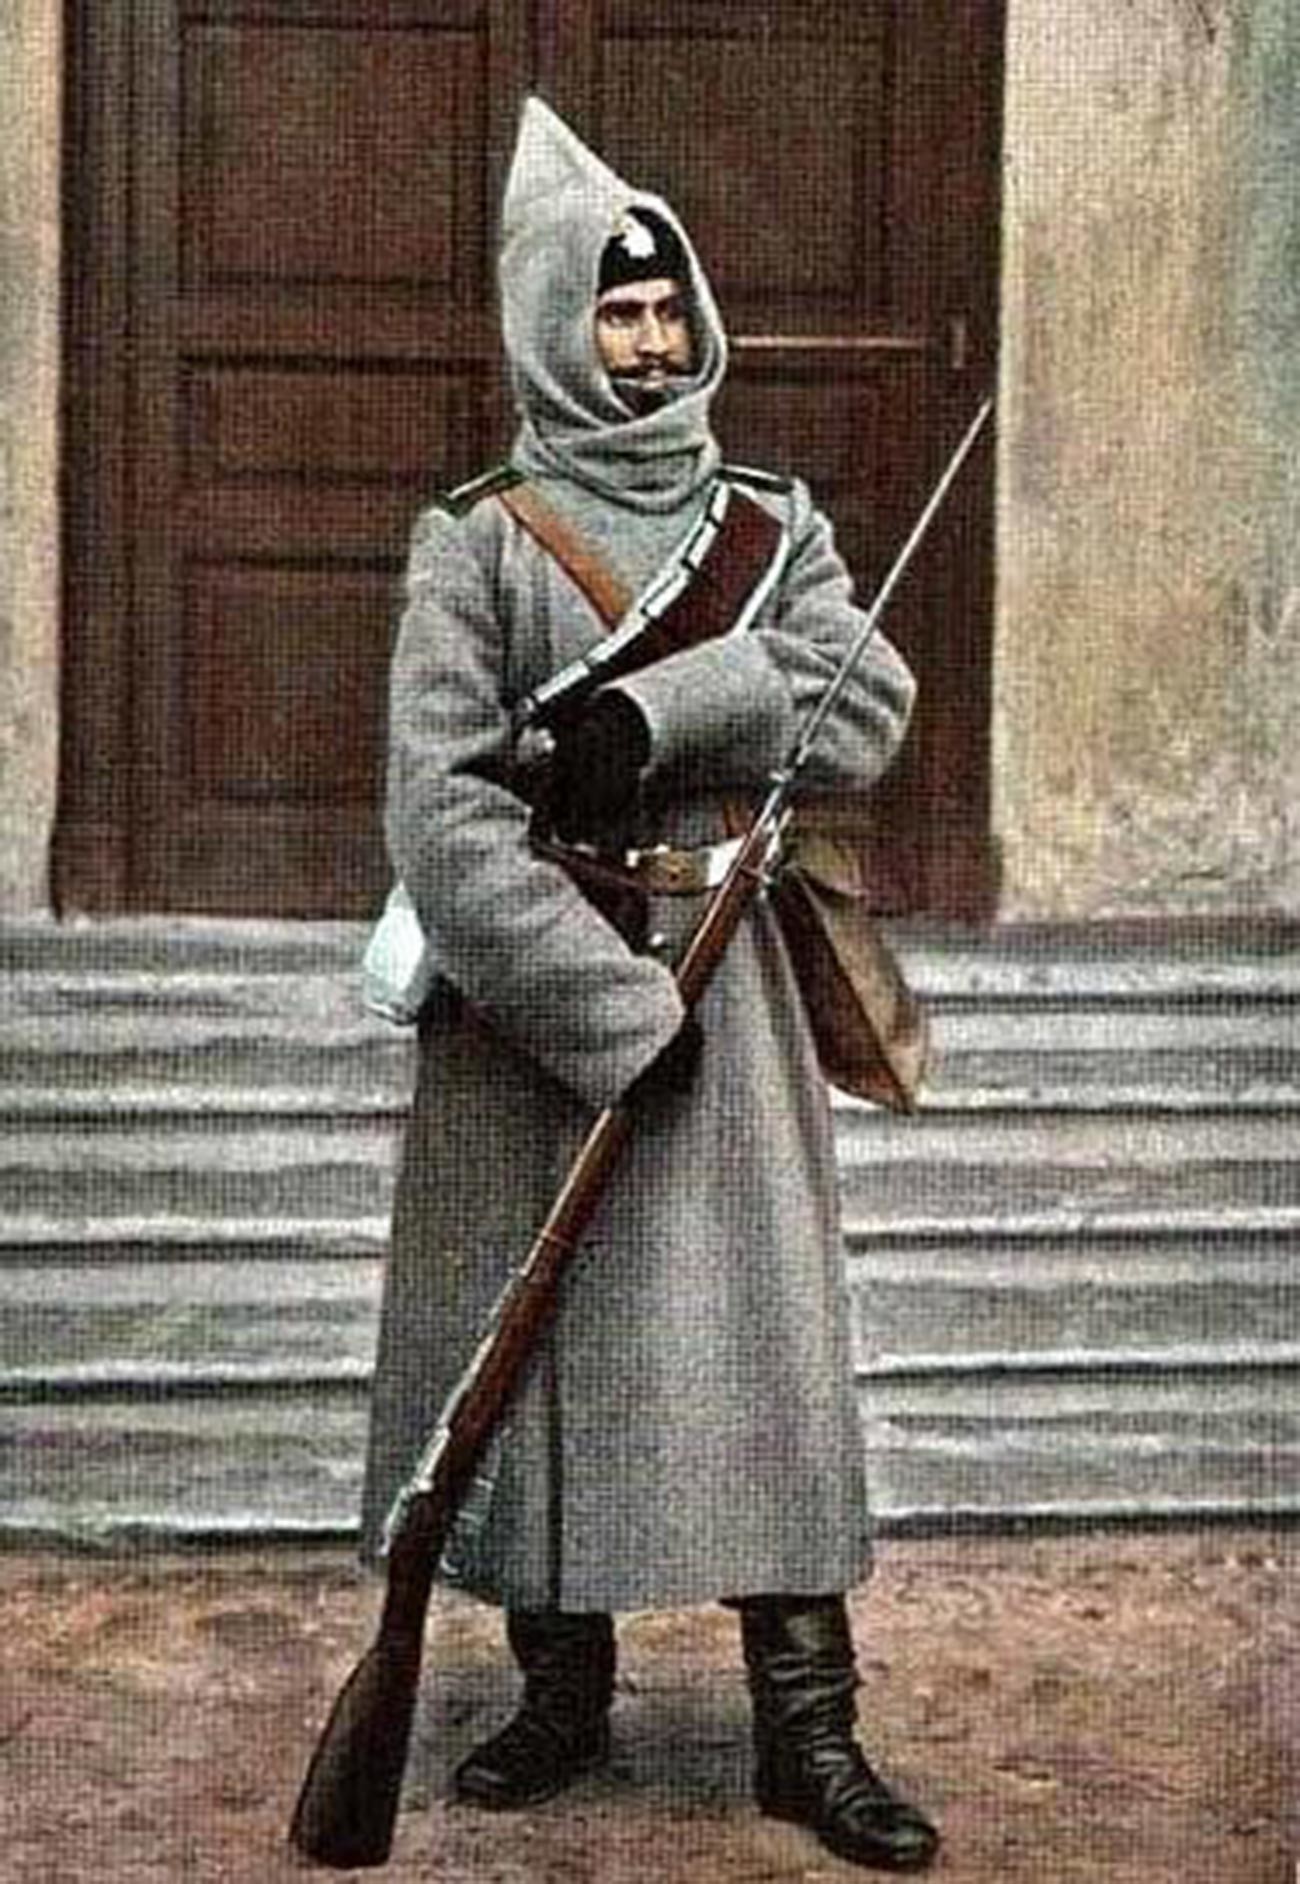 Bashlyk sebagai bagian dari seragam militer bersejarah.